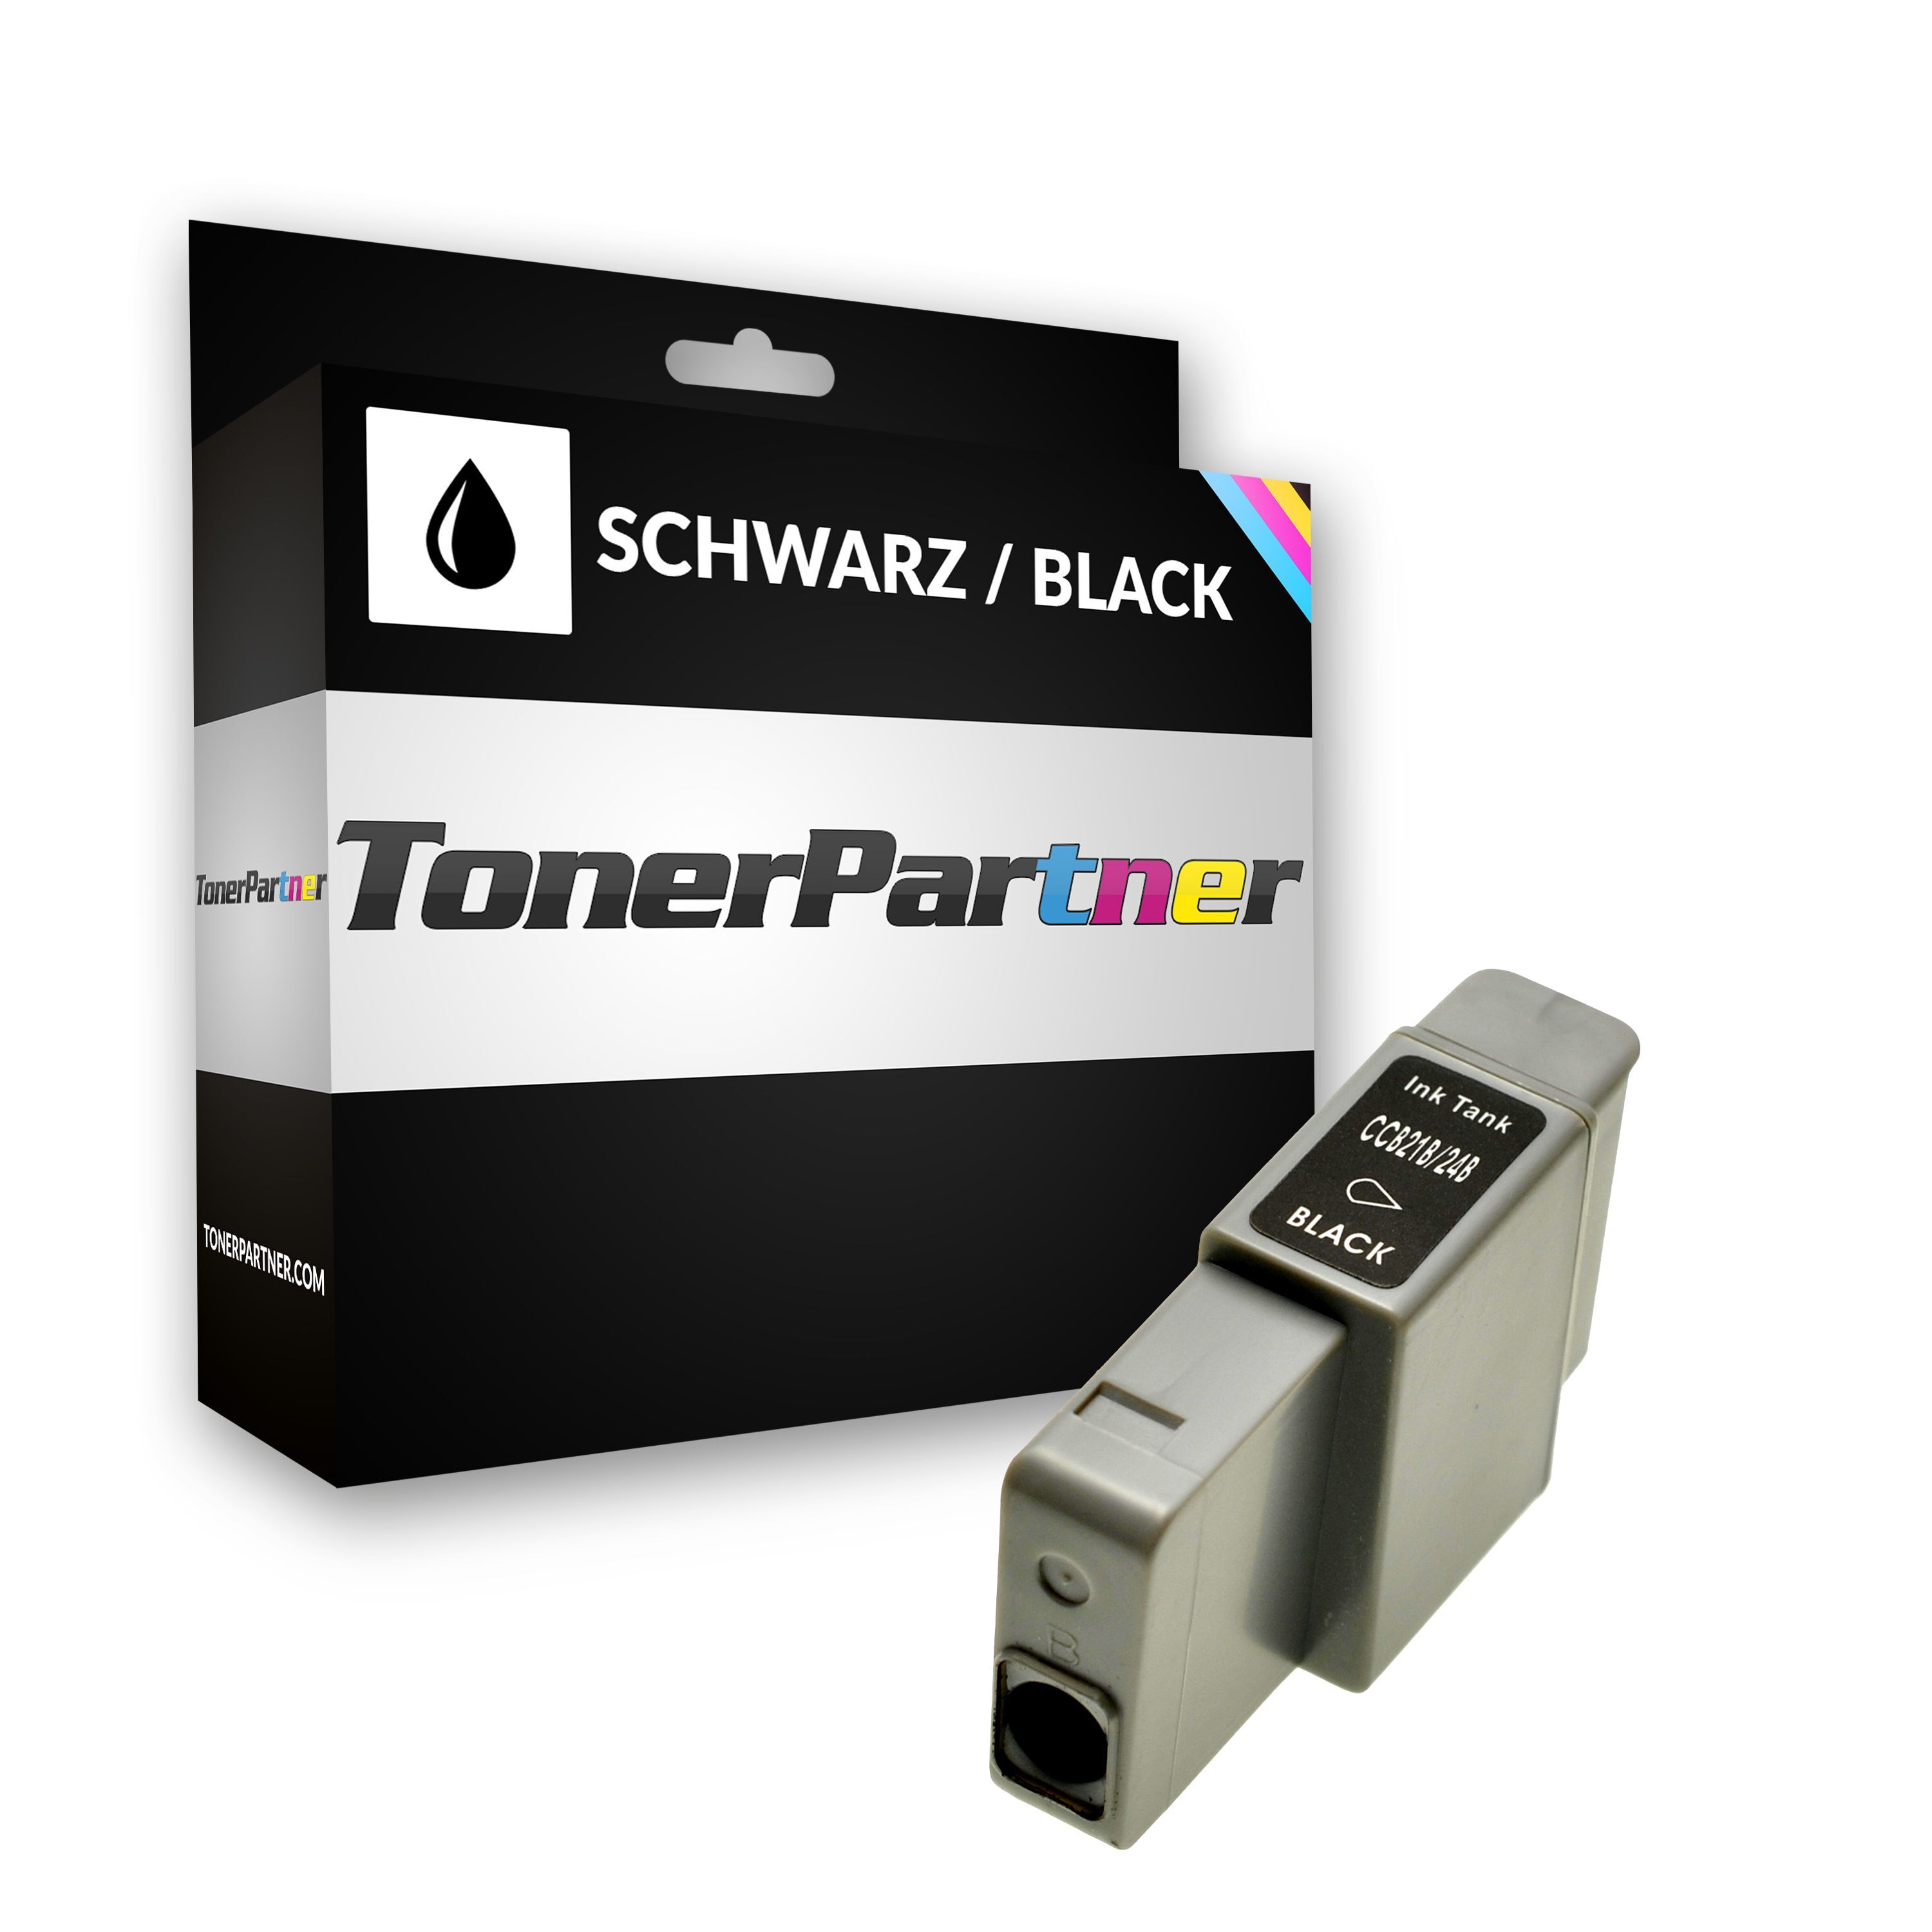 TonerPartner Kompatibel zu Canon Smartbase MPC 200 Tintenpatrone (BCI-24 BK / 6881 A 002) schwarz, 240 Seiten, 1,44 Rp pro Seite, Inhalt: 9 ml von TonerPartner